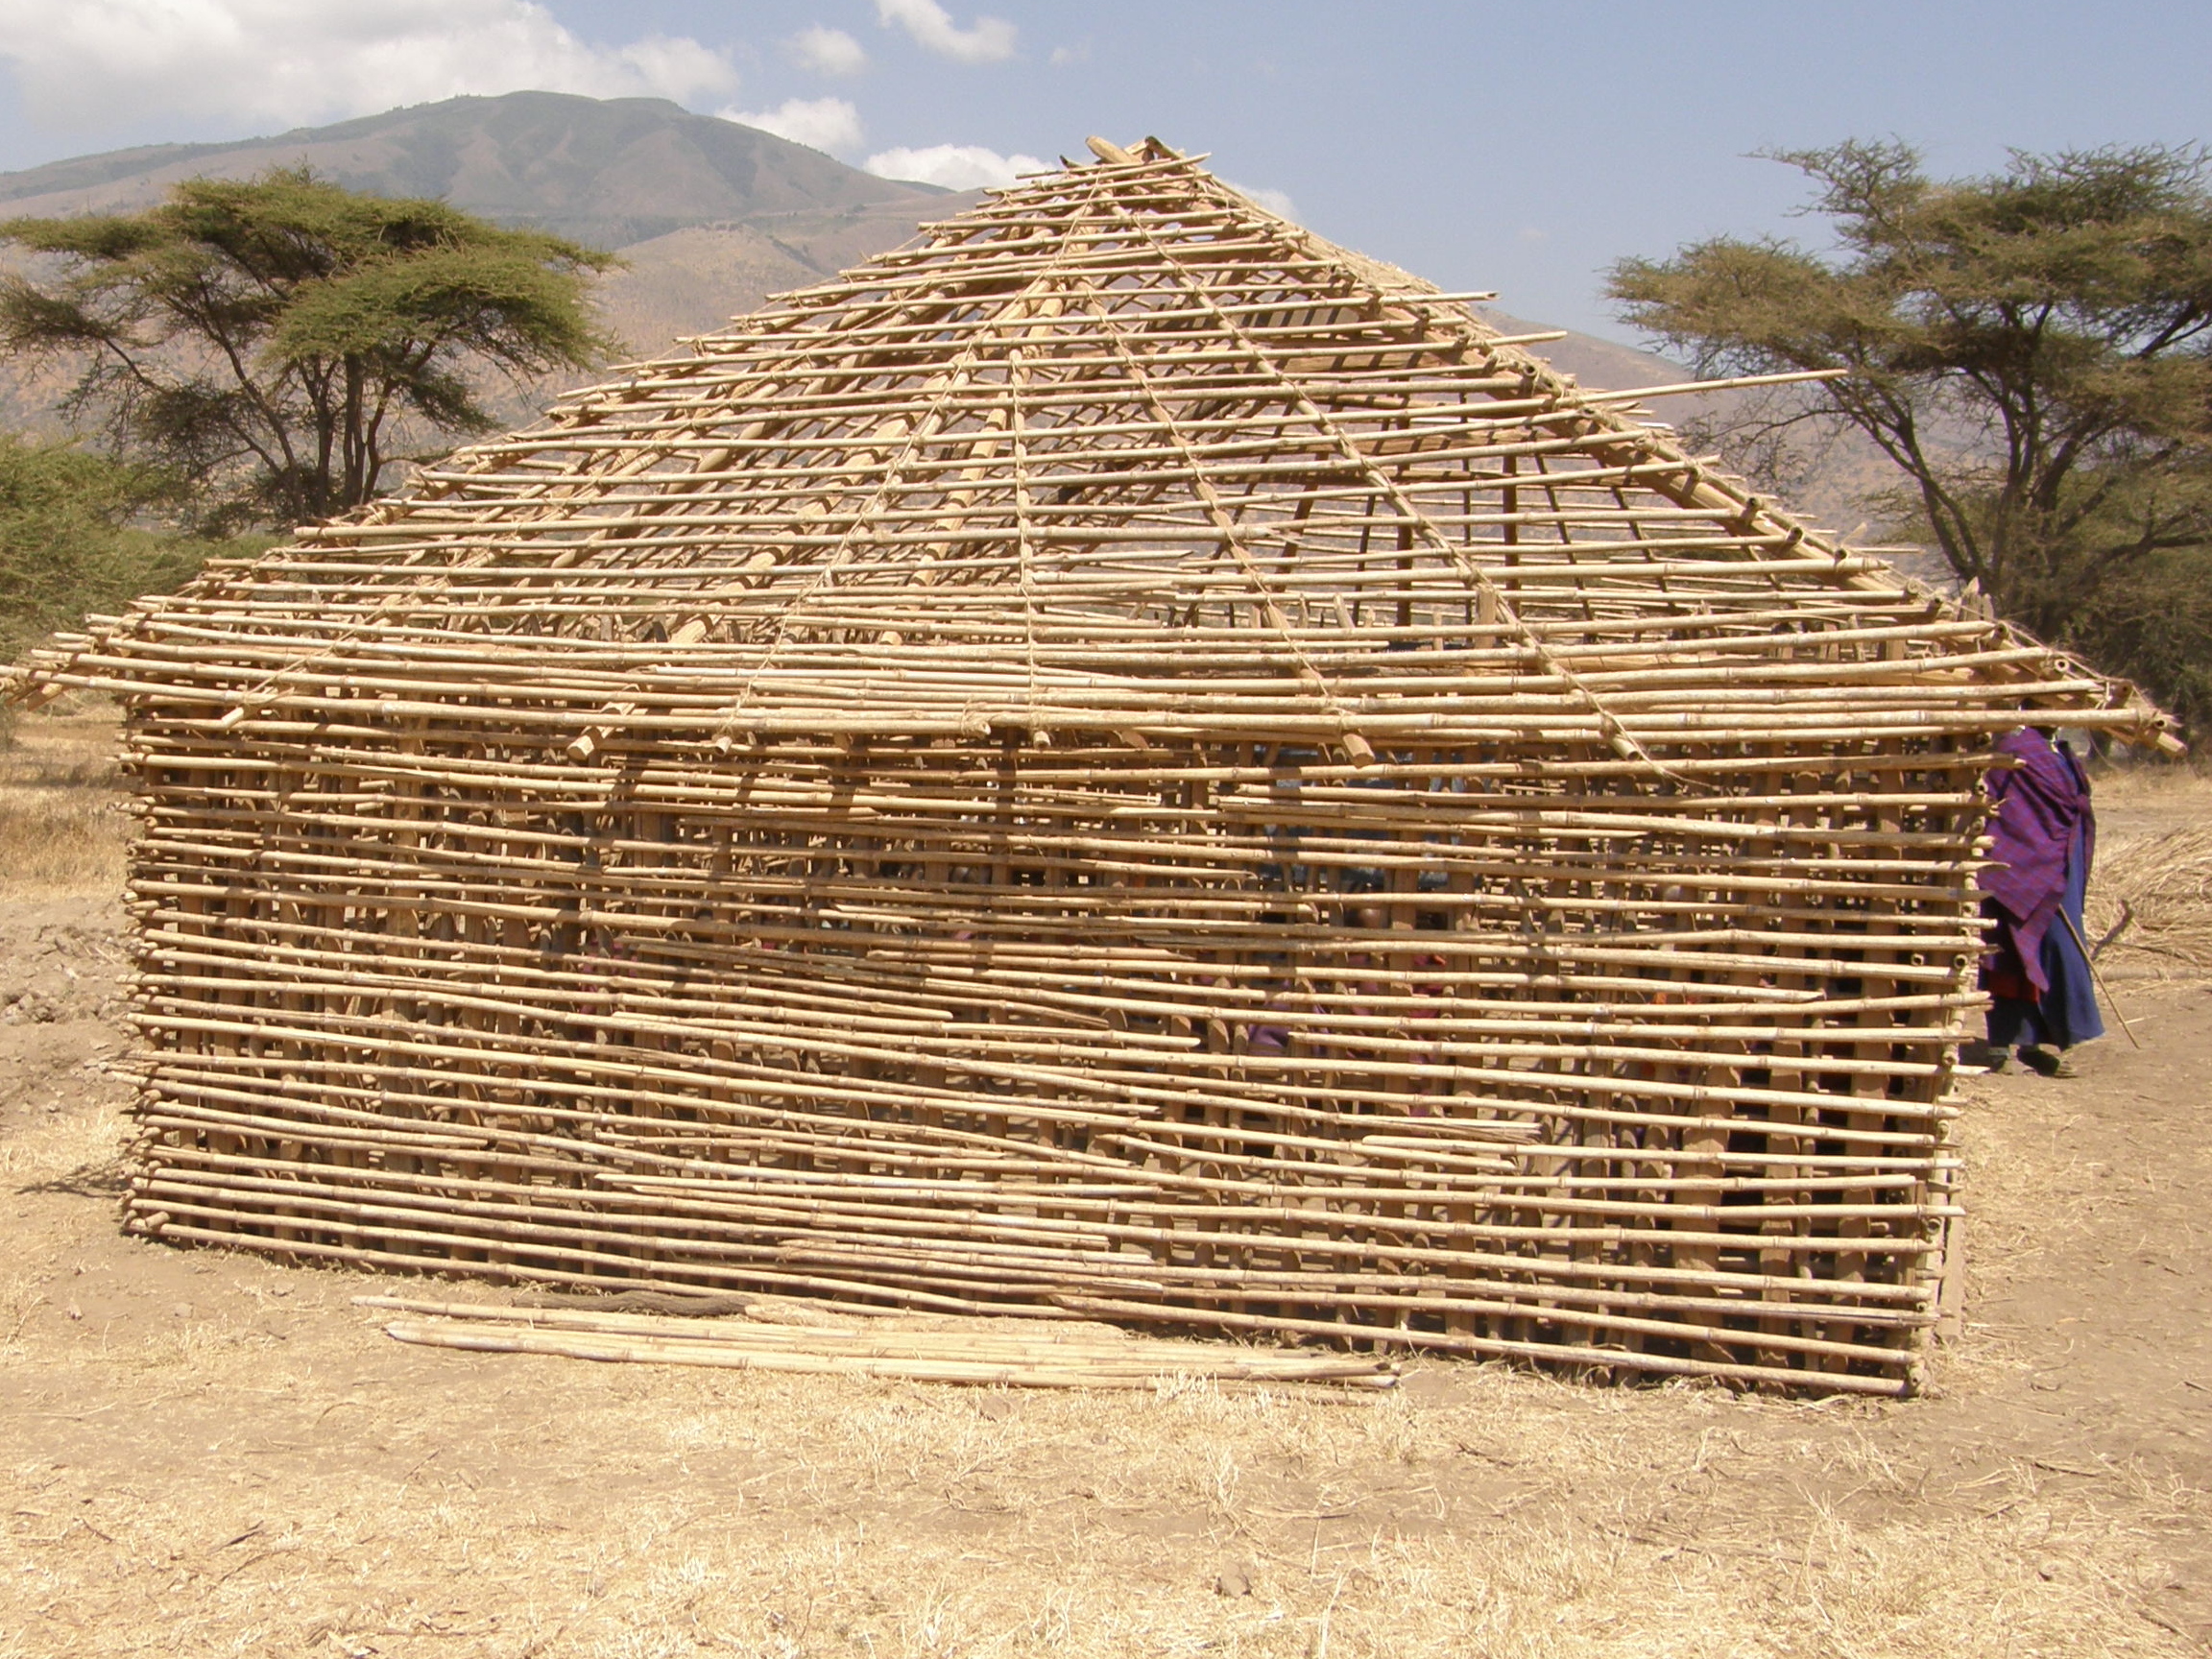 Masai school building